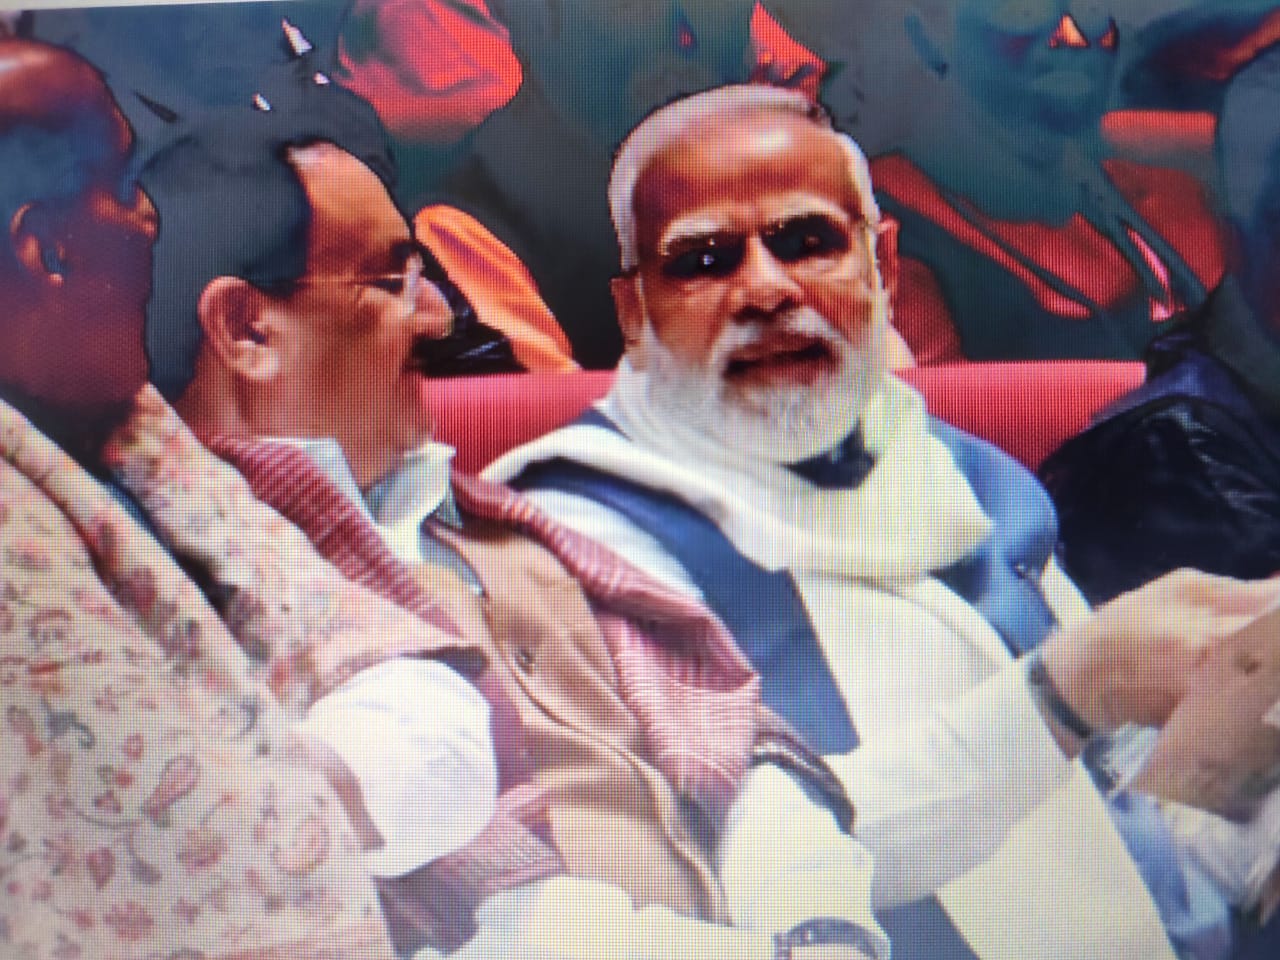 प्रधानमंत्री ने देशवासियों से हर घर तिरंगा अभियान में भाग लेने, सोशल मीडिया डीपी बदलने को कहा